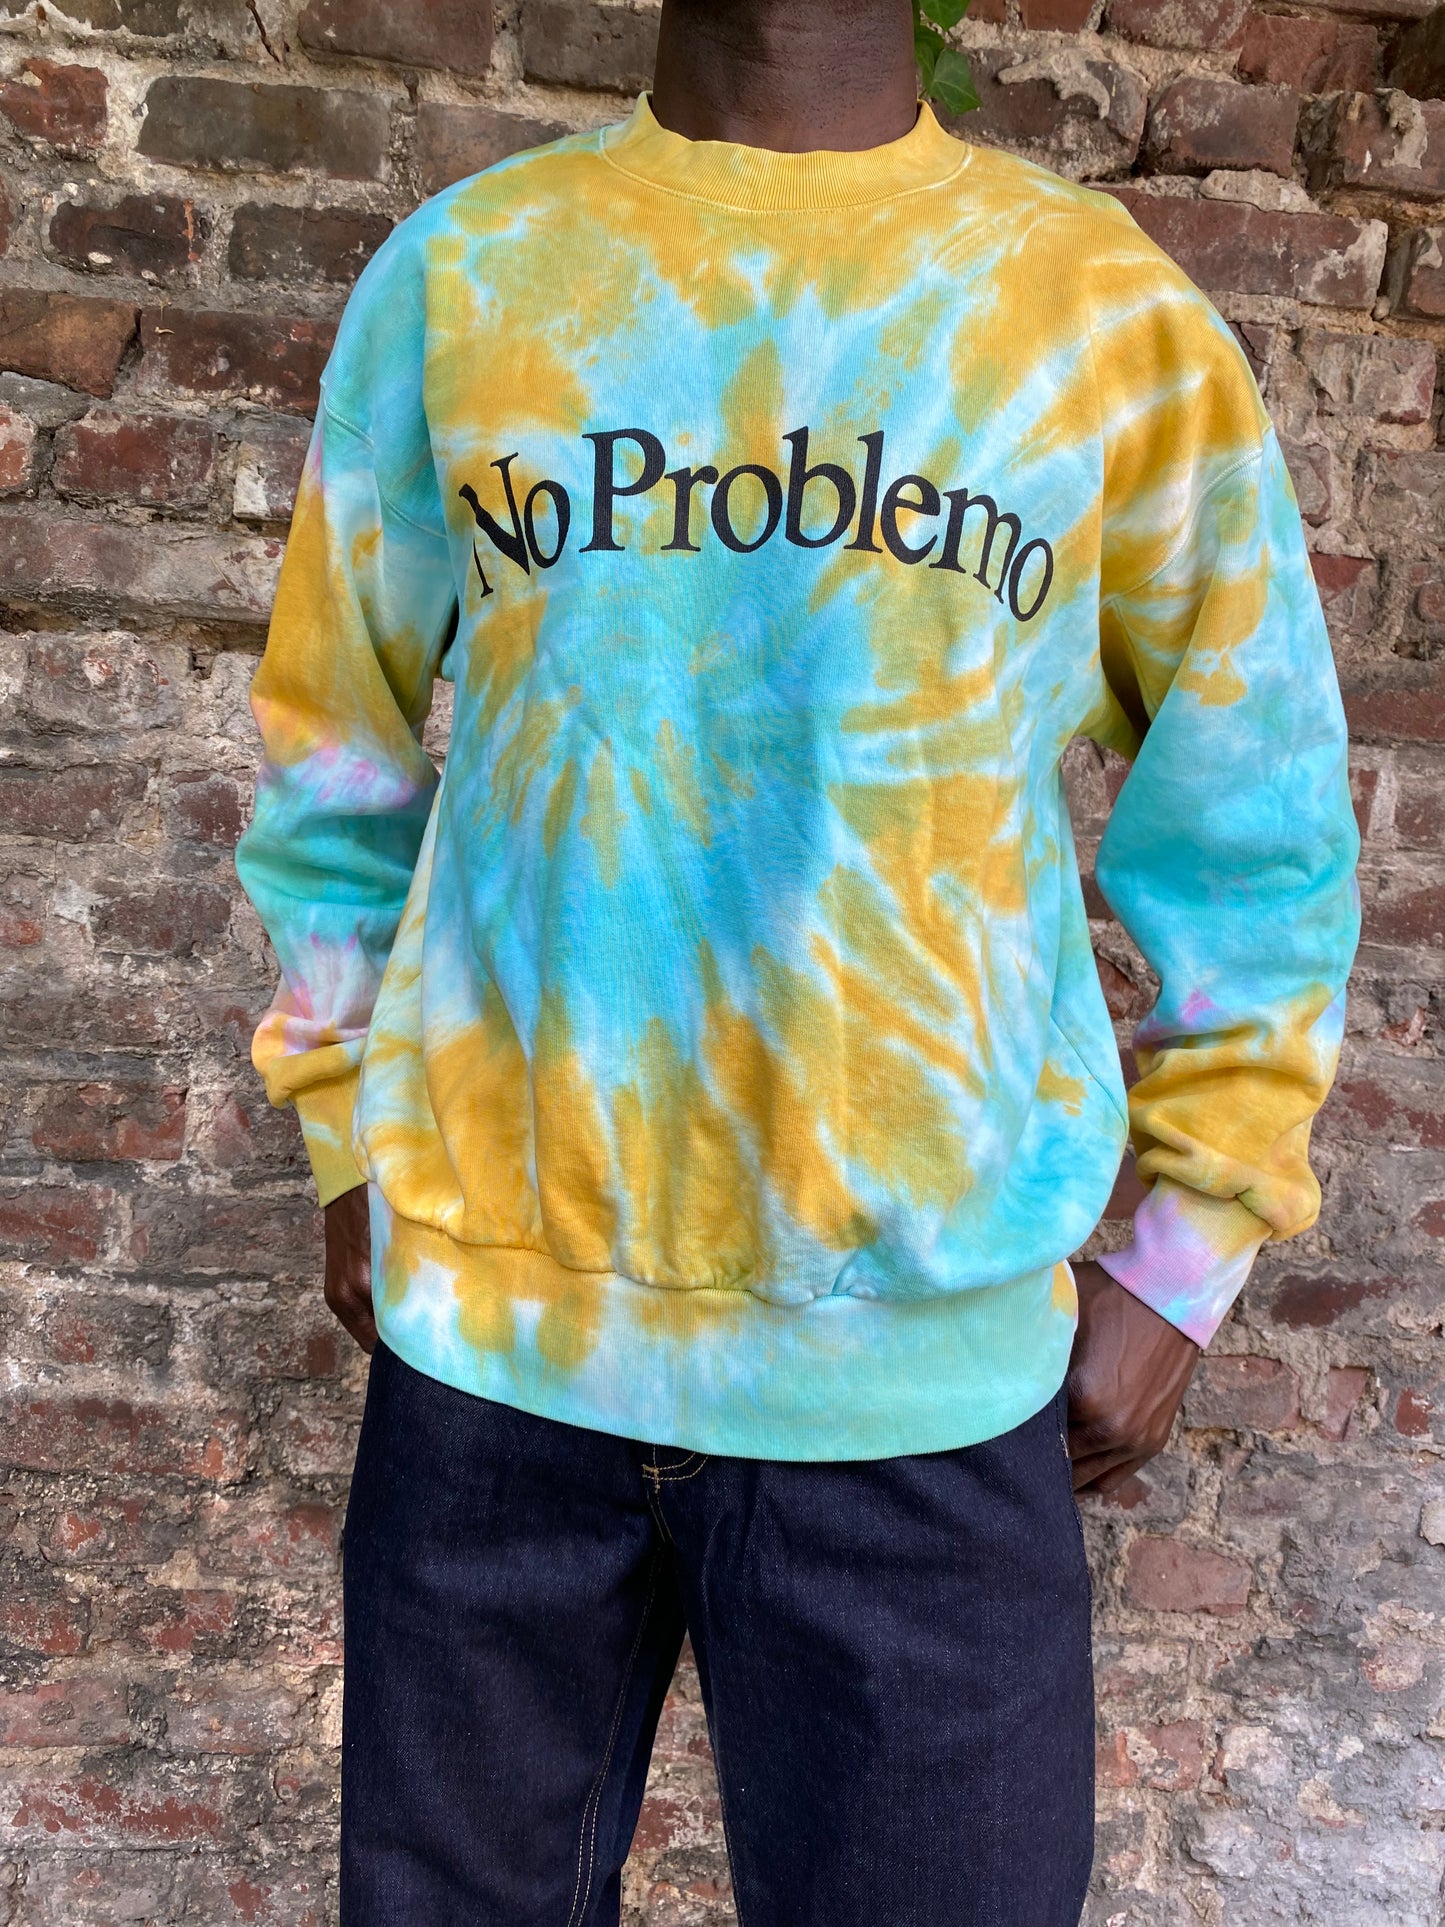 Aries Sweatshirt "No problemo" - Tie Dye Multicolour